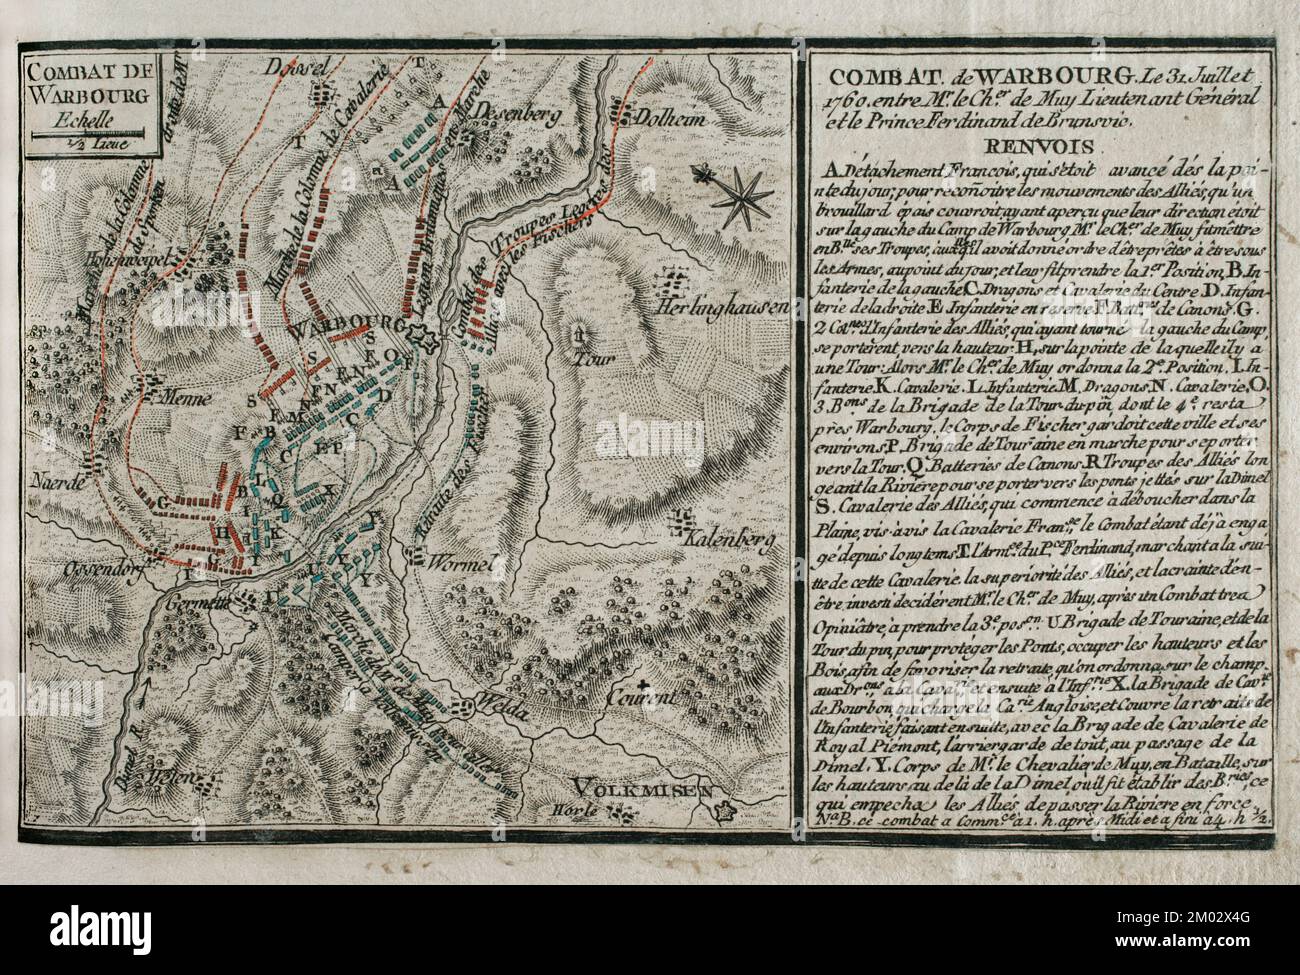 Guerra dei sette anni (1756-1763). Mappa della battaglia di Warburg (31 luglio 1760) tra l'esercito britannico e quello anoveriano alleato, guidato dal maresciallo di campo Principe Ferdinando di Brunswick-Wolfenbüttel (1721-1792), e l'esercito francese, comandato dal tenente generale le Chevalier du Muy (Louis Nicolas Victor de Felix d'Ollieres). Vittoria alleata. Pubblicato nel 1765 dal cartografo Jean de Beaurain (1696-1771) come illustrazione della sua Grande carta della Germania, con gli eventi che si sono verificati durante la Guerra dei sette anni. Esercito alleato in rosso e esercito francese in blu. Acquaforte e travestimento. Edizione francese, 1765. Foto Stock